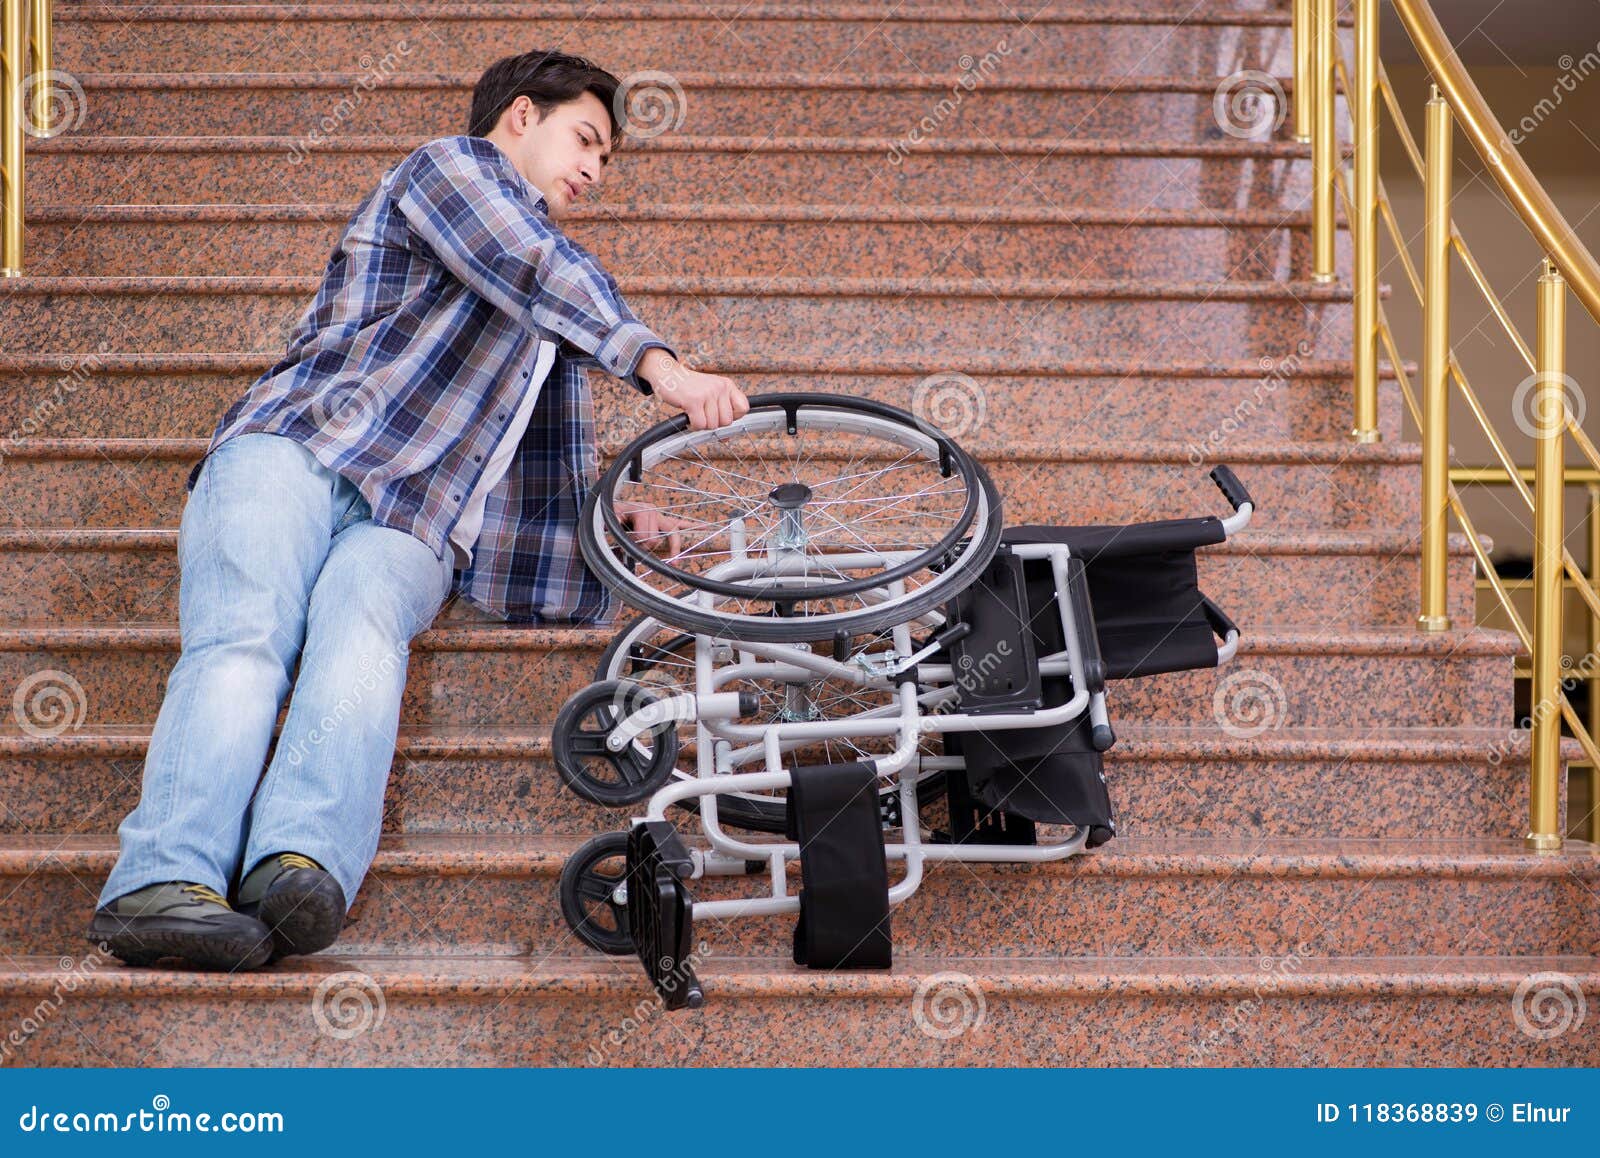 Человек в инвалидной коляске. Коляска для инвалидов. Лестница для людей с ограниченными возможностями. Ноги инвалида колясочника.